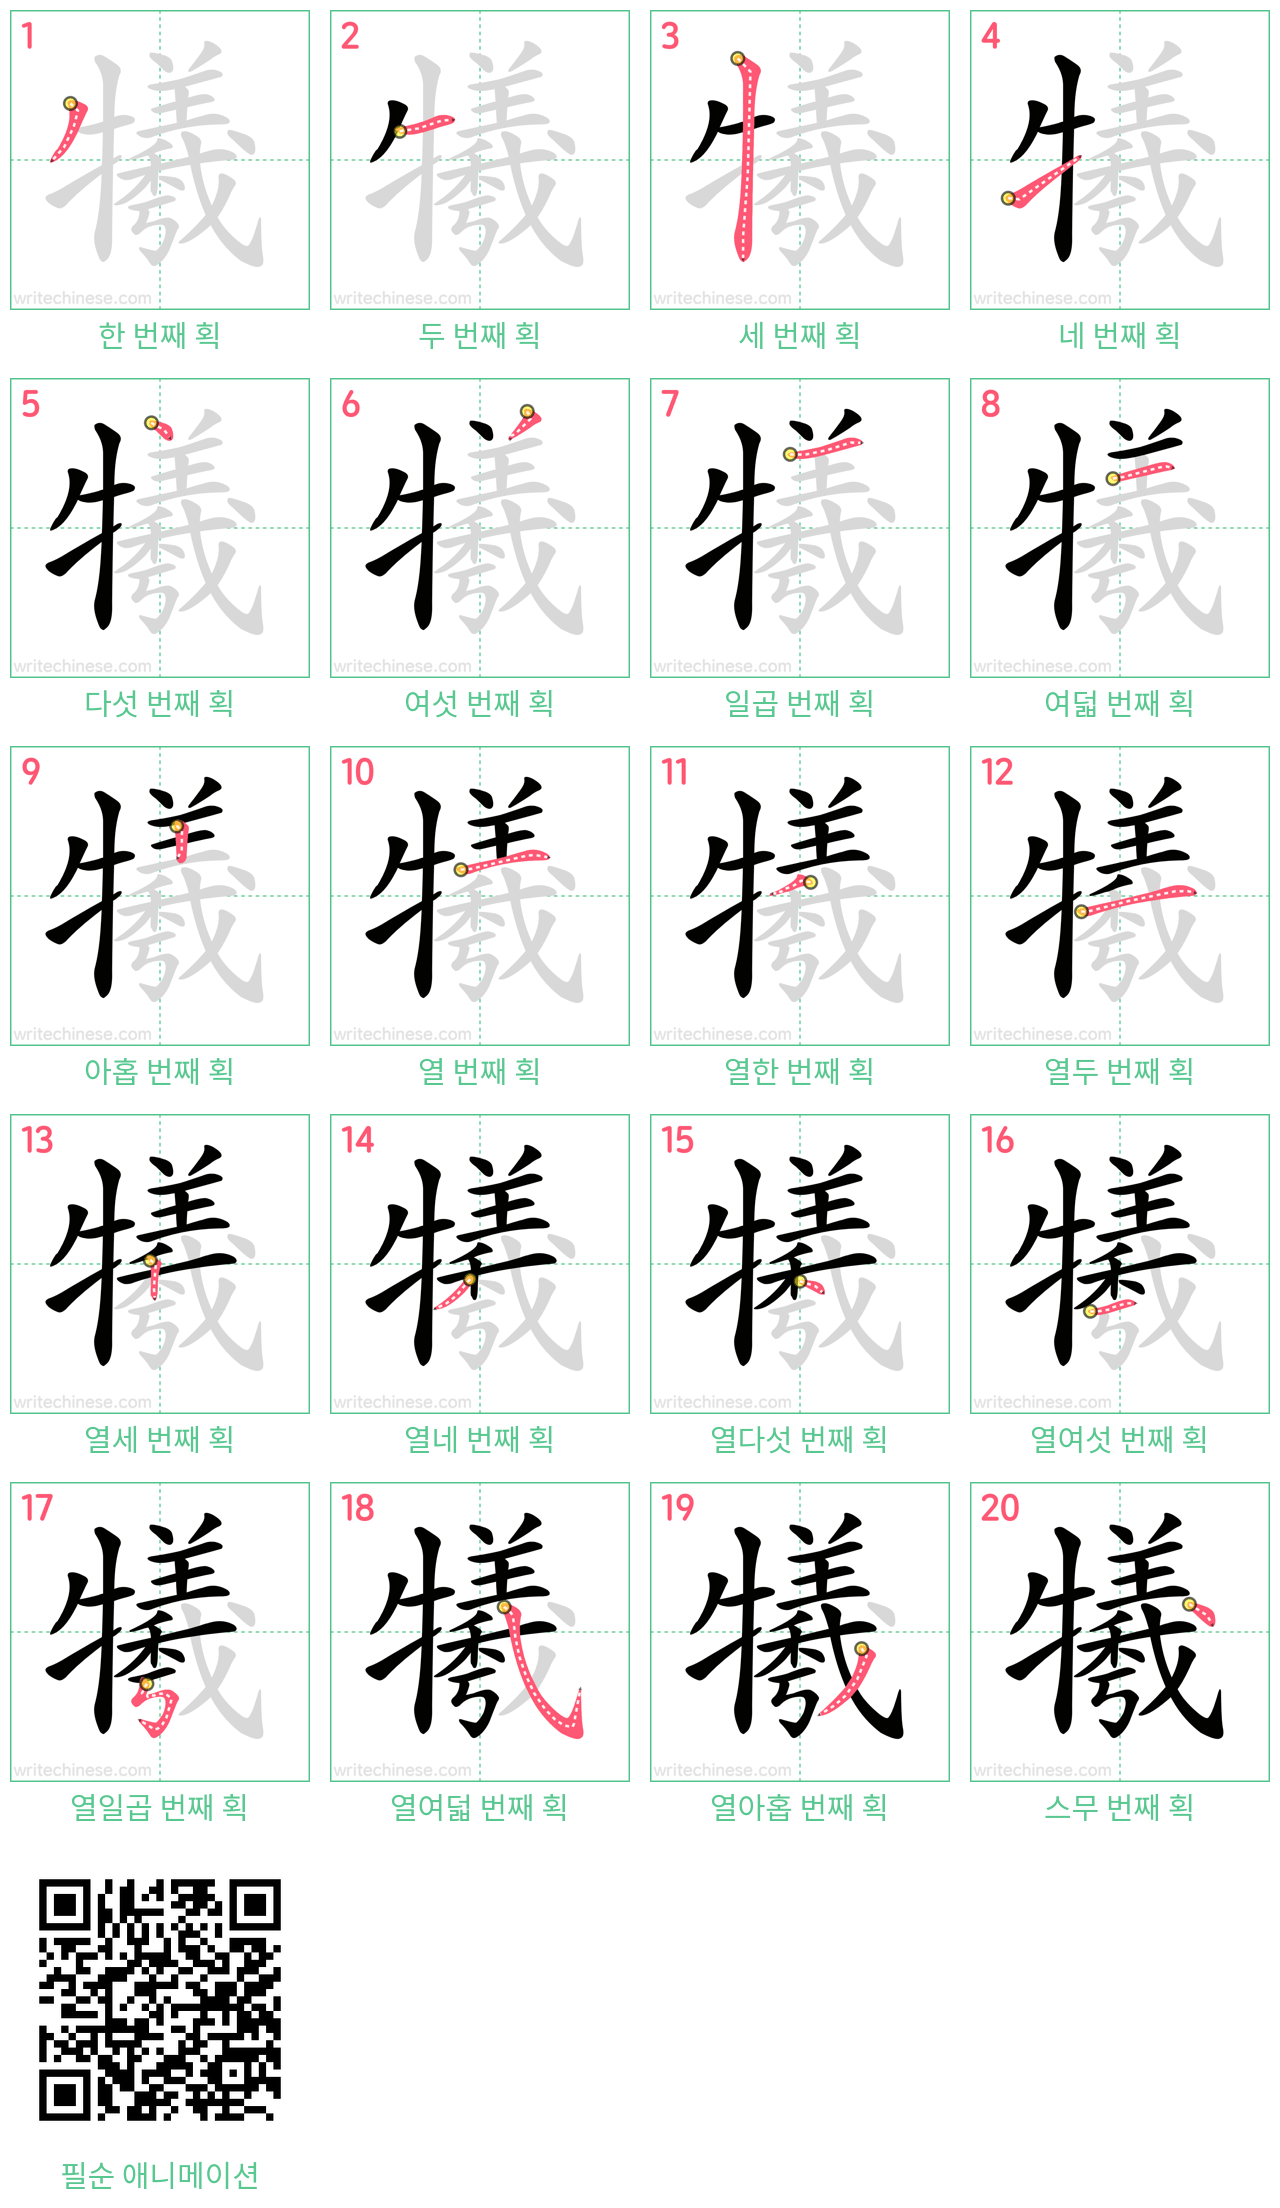 犧 step-by-step stroke order diagrams